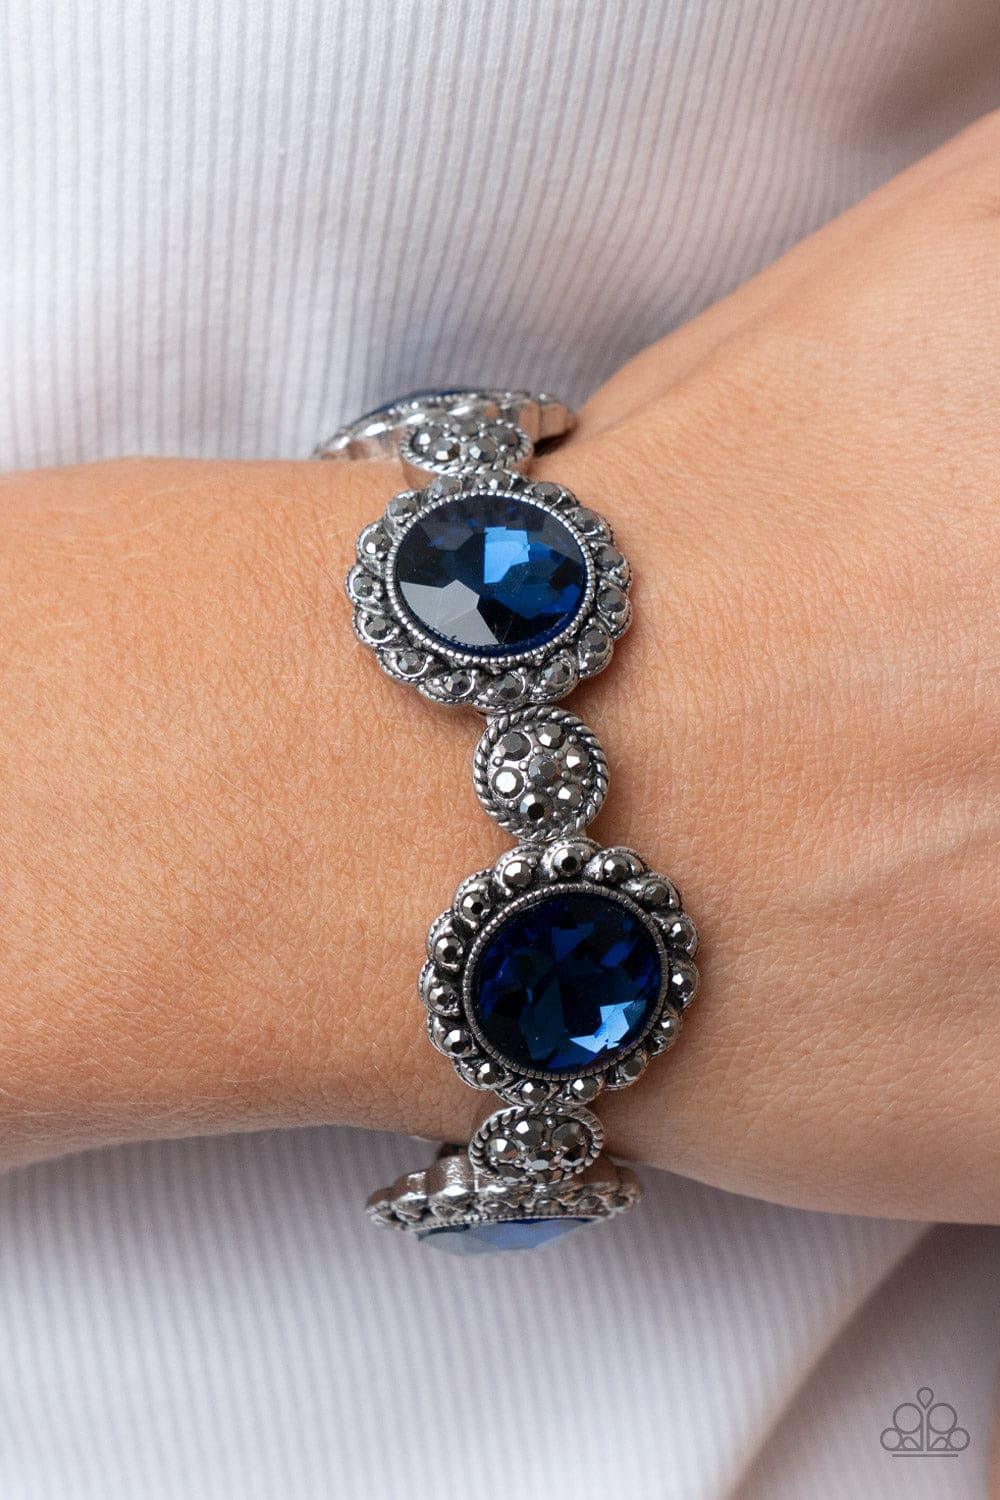 Paparazzi Accessories - Palace Property - Blue Bracelet - Bling by JessieK